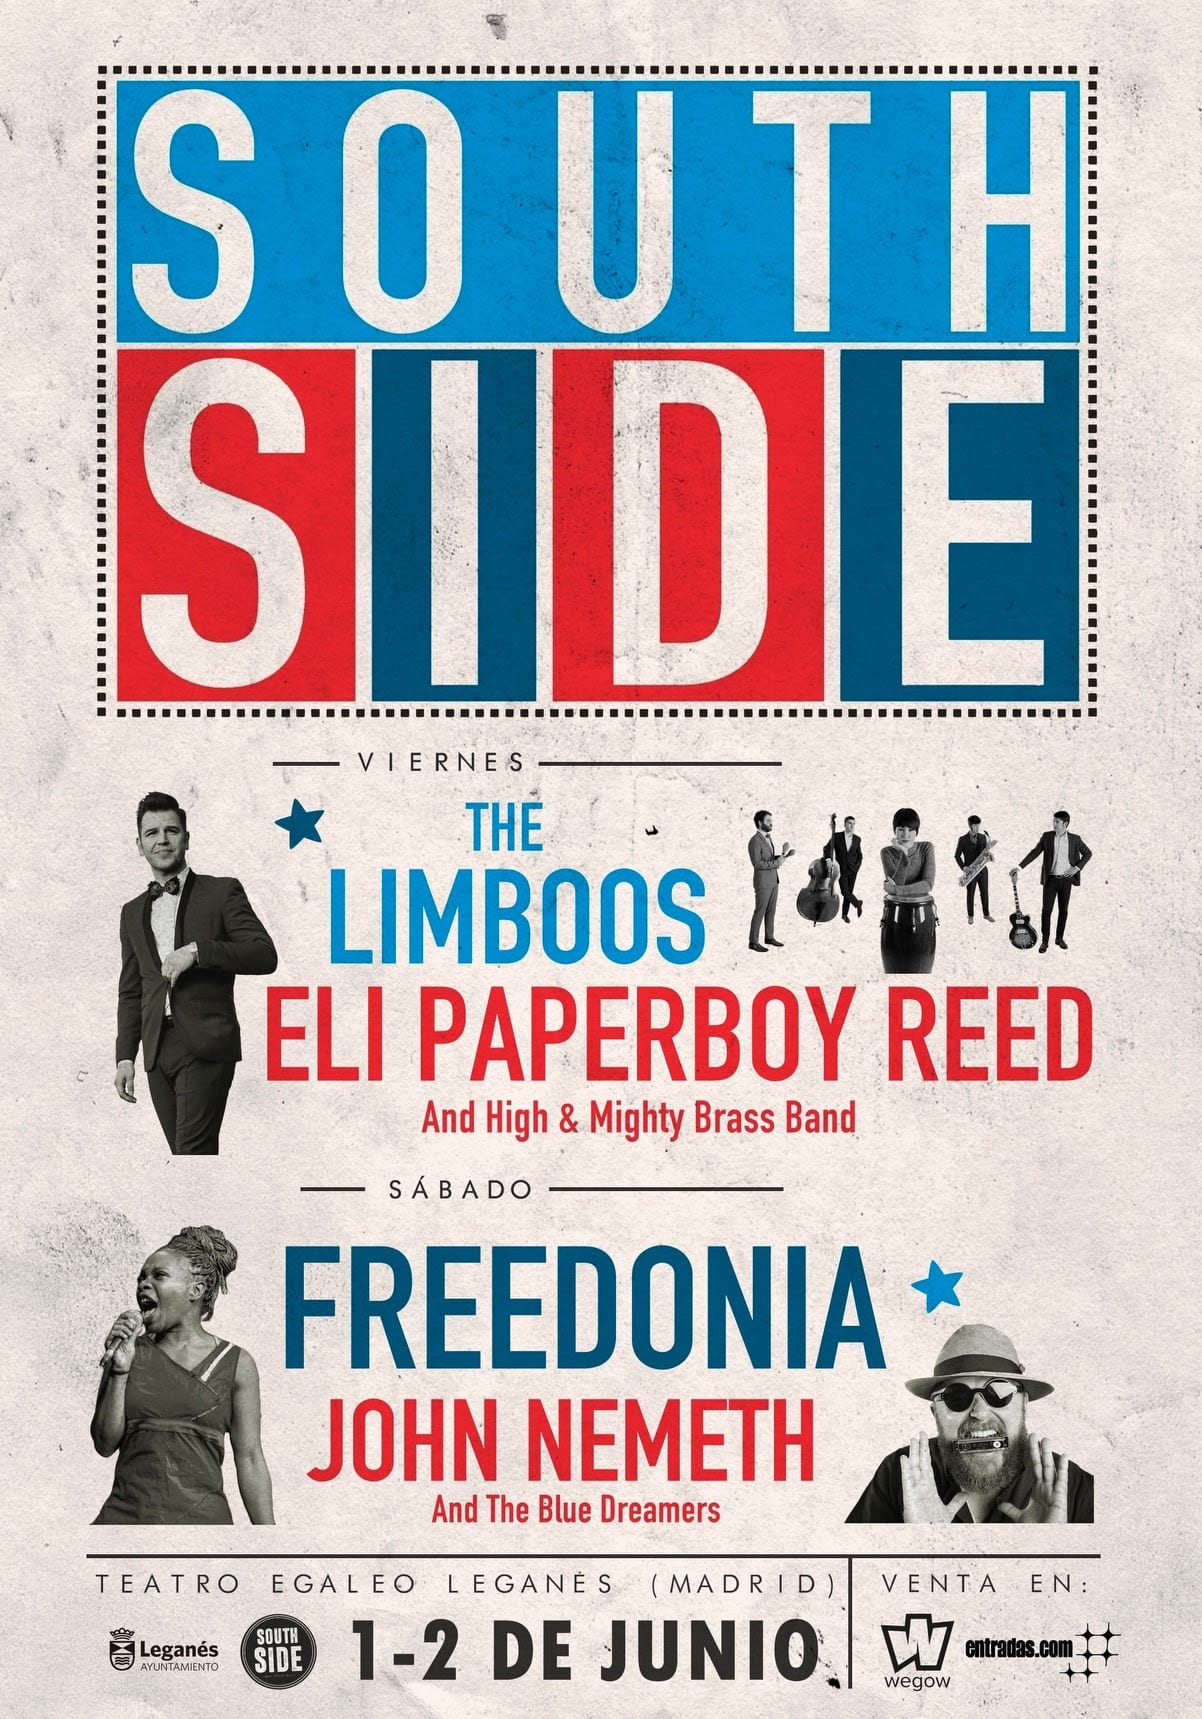 El festival South Side 2018 lanza su cartel